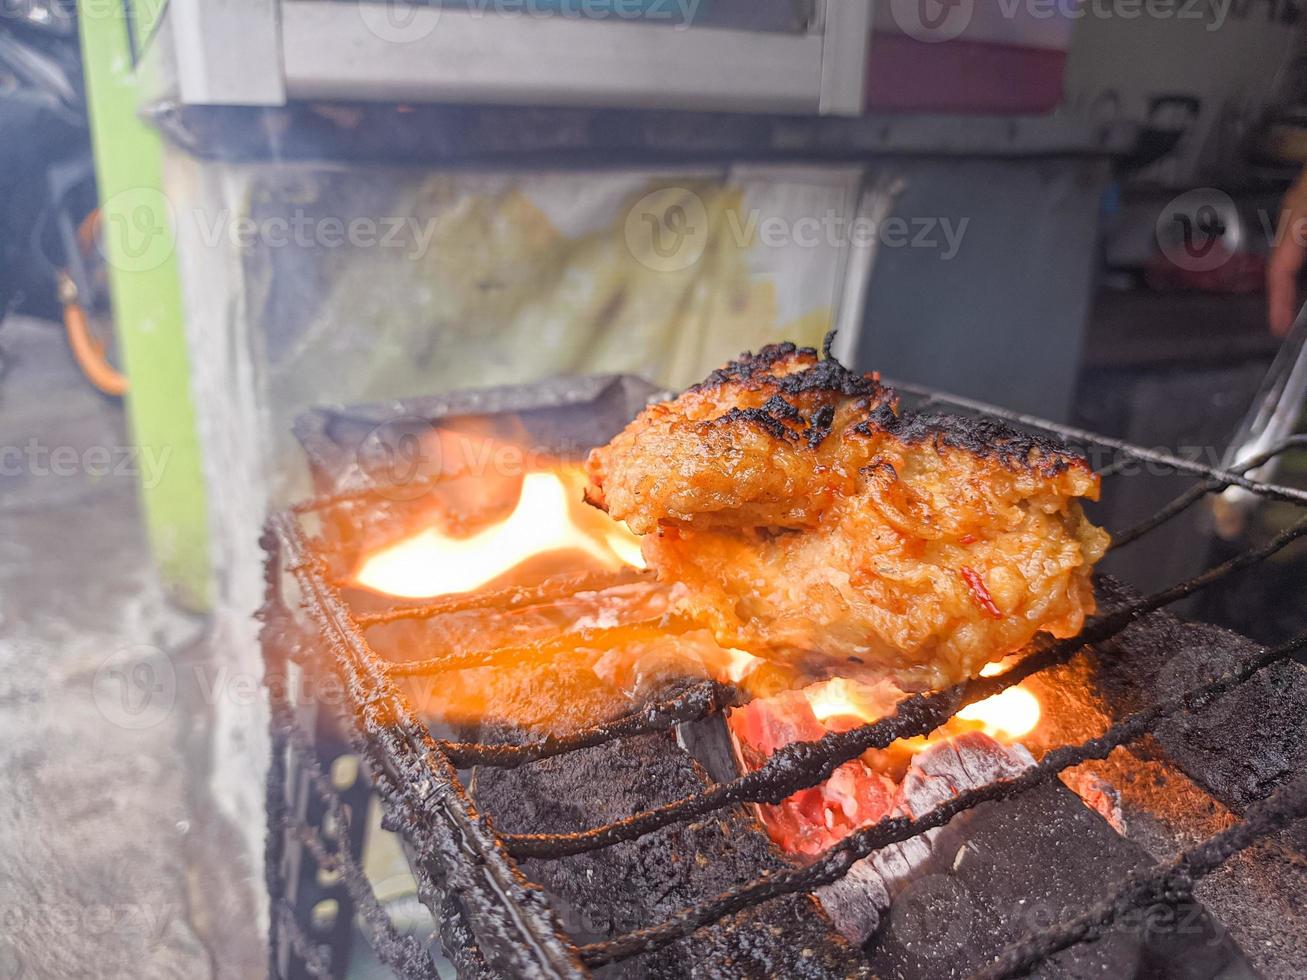 kyckling bröst insvept i Krispig mjöl med utsökt kryddad kryddor grillad på pyrande varm träkol.a typisk grillad kyckling från indonesien foto